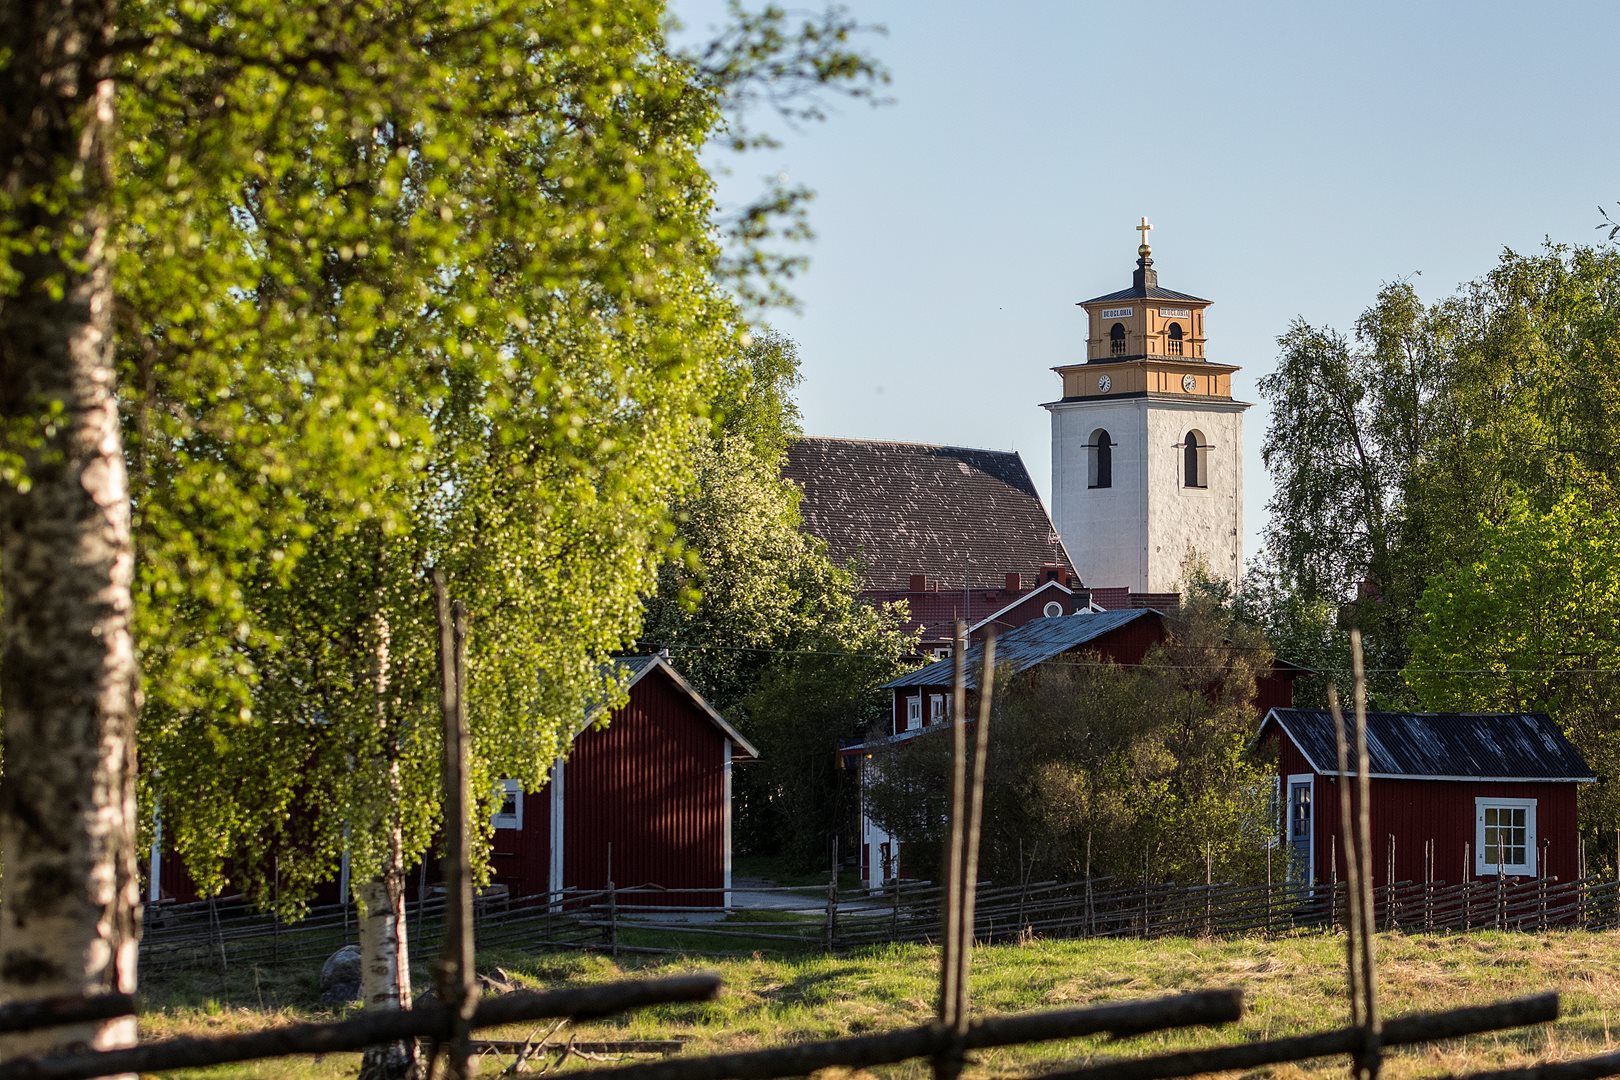 Gammelstads Kyrkstad in Luleå during summer